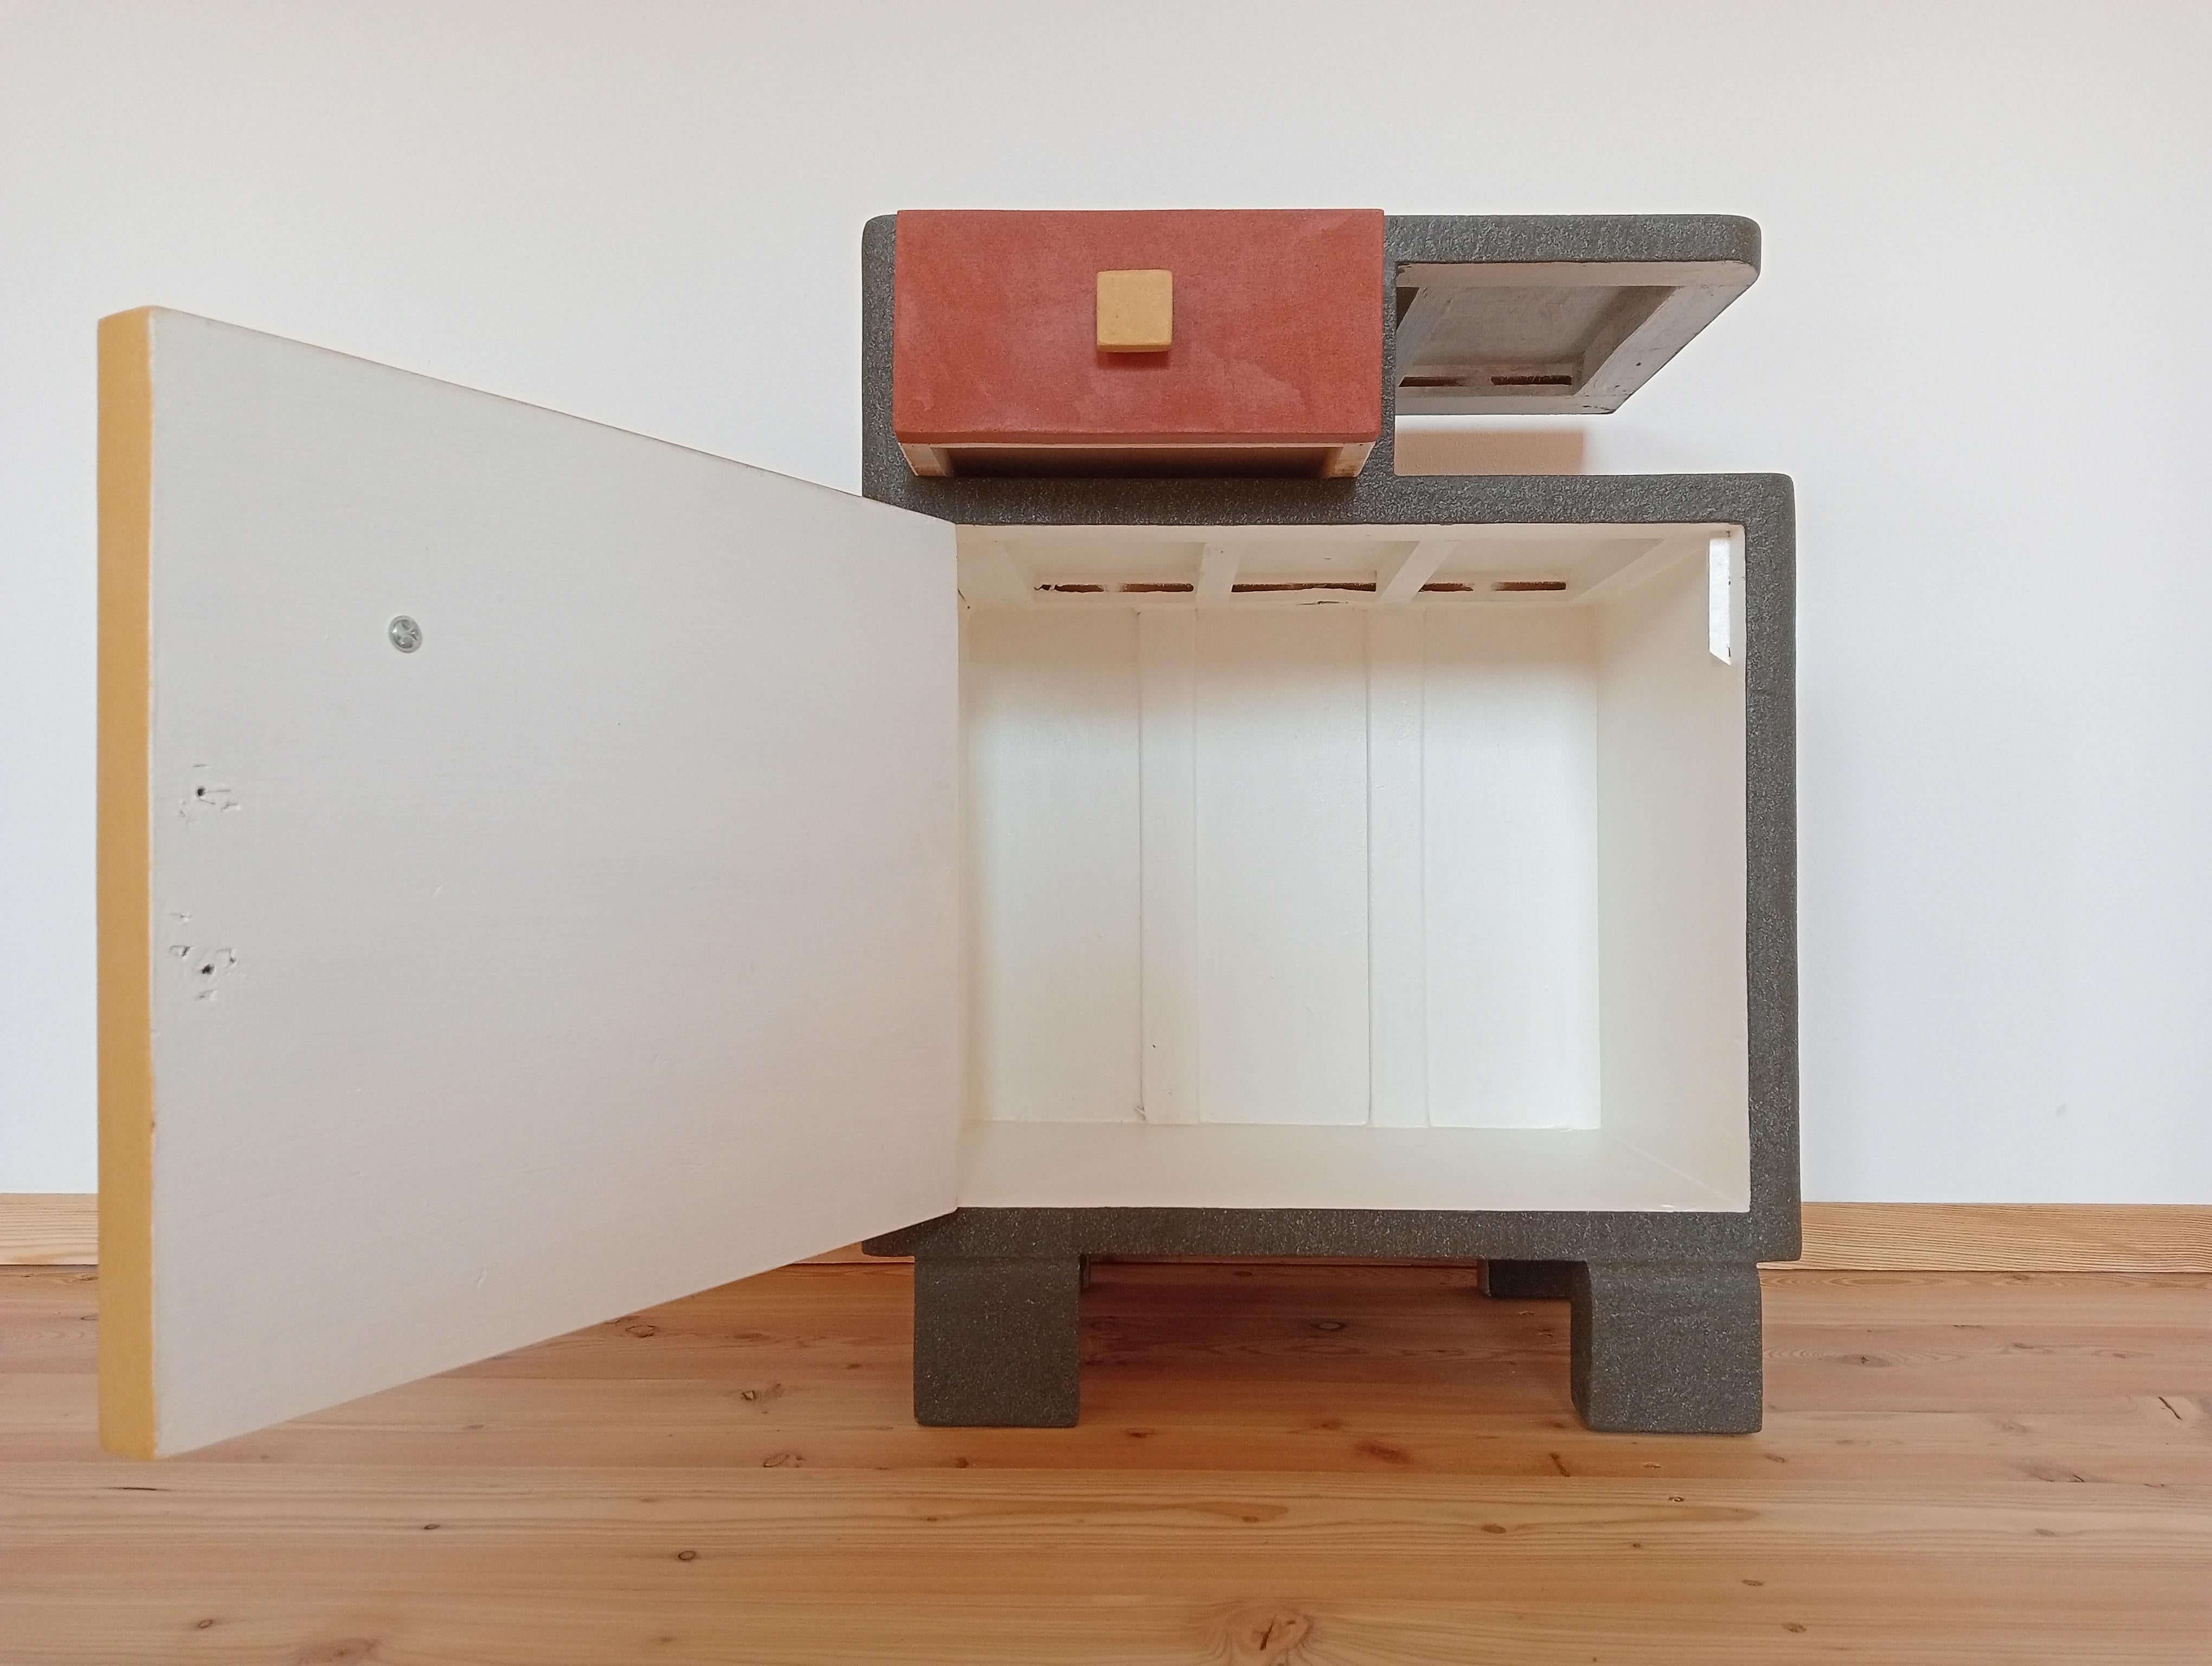 Résine Cabinet-Sculpture du 21e siècle Contemporary Gold-Green-Red en Wood & Resin en vente